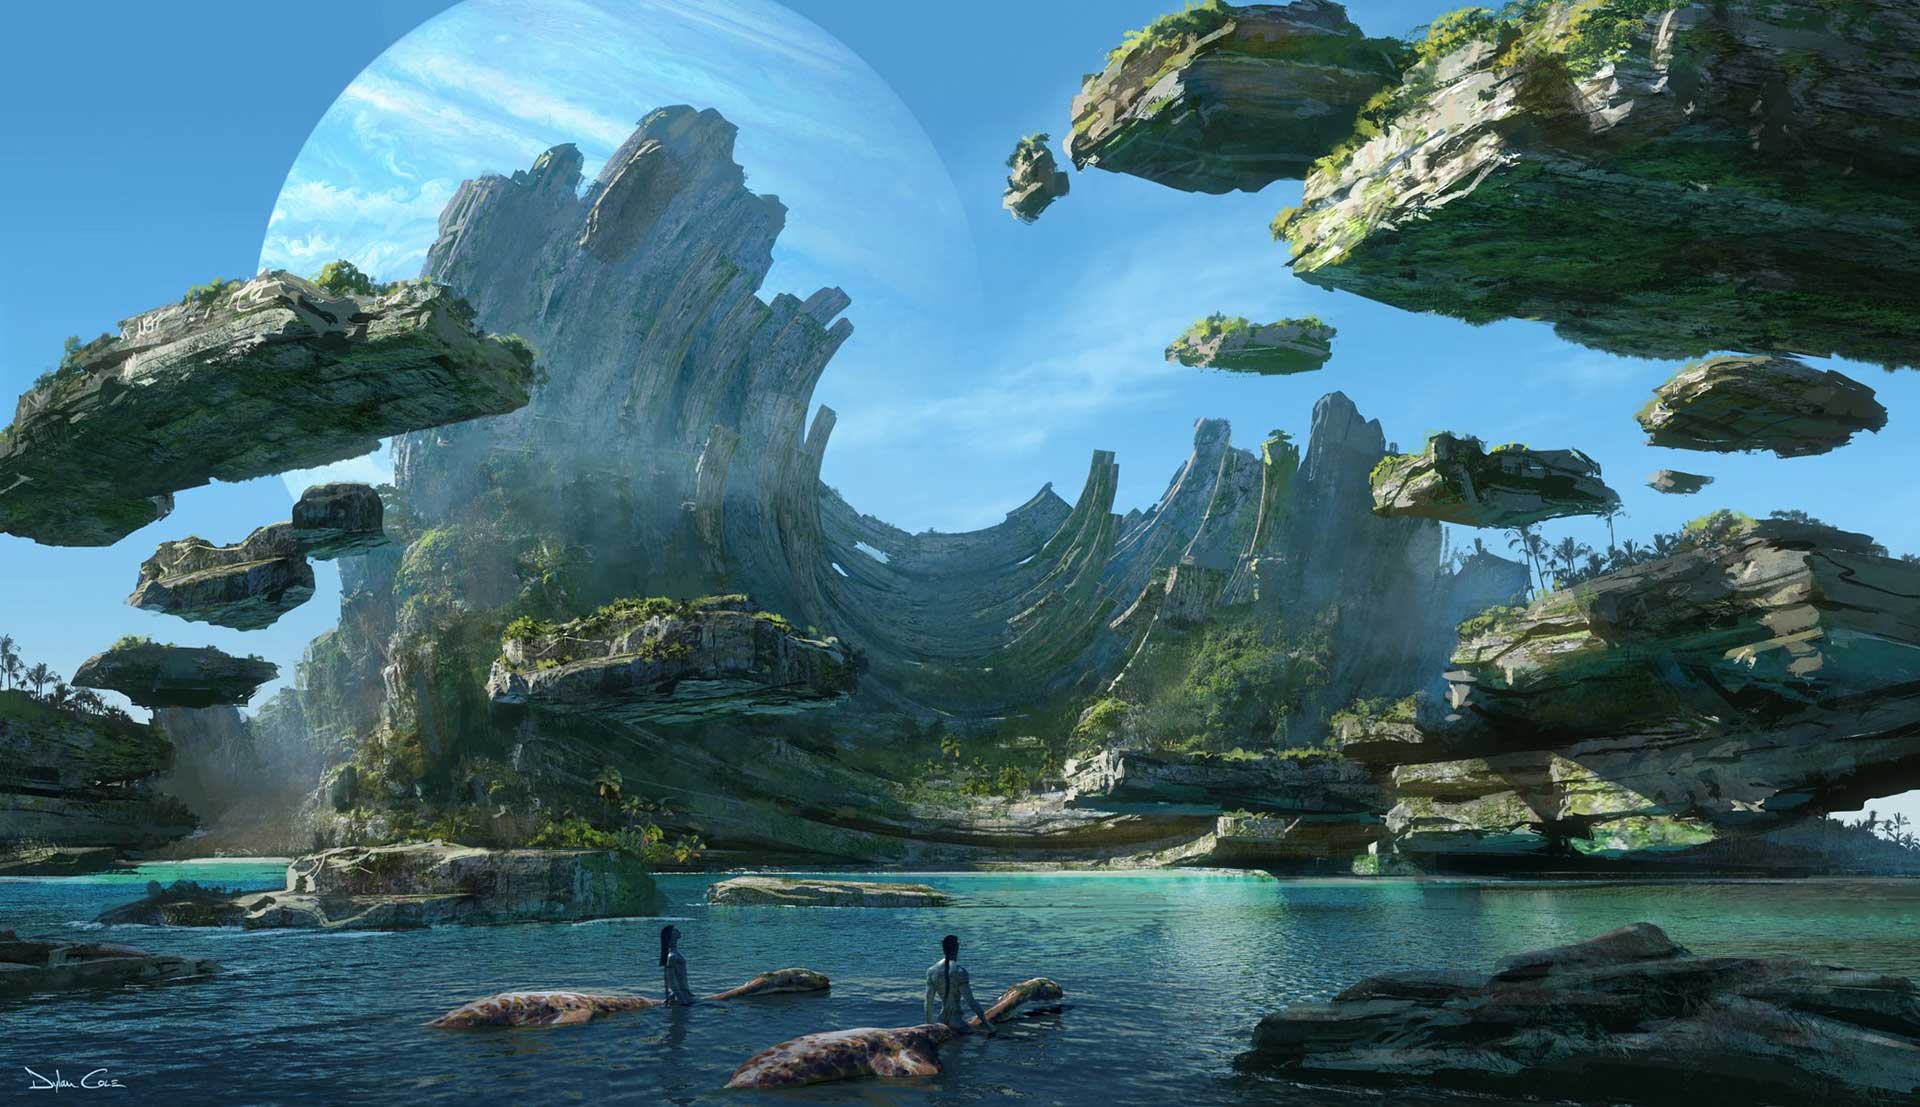 تصاویر فیلم آواتار ۲ (Avatar 2) در CES 2020 منتشر شد